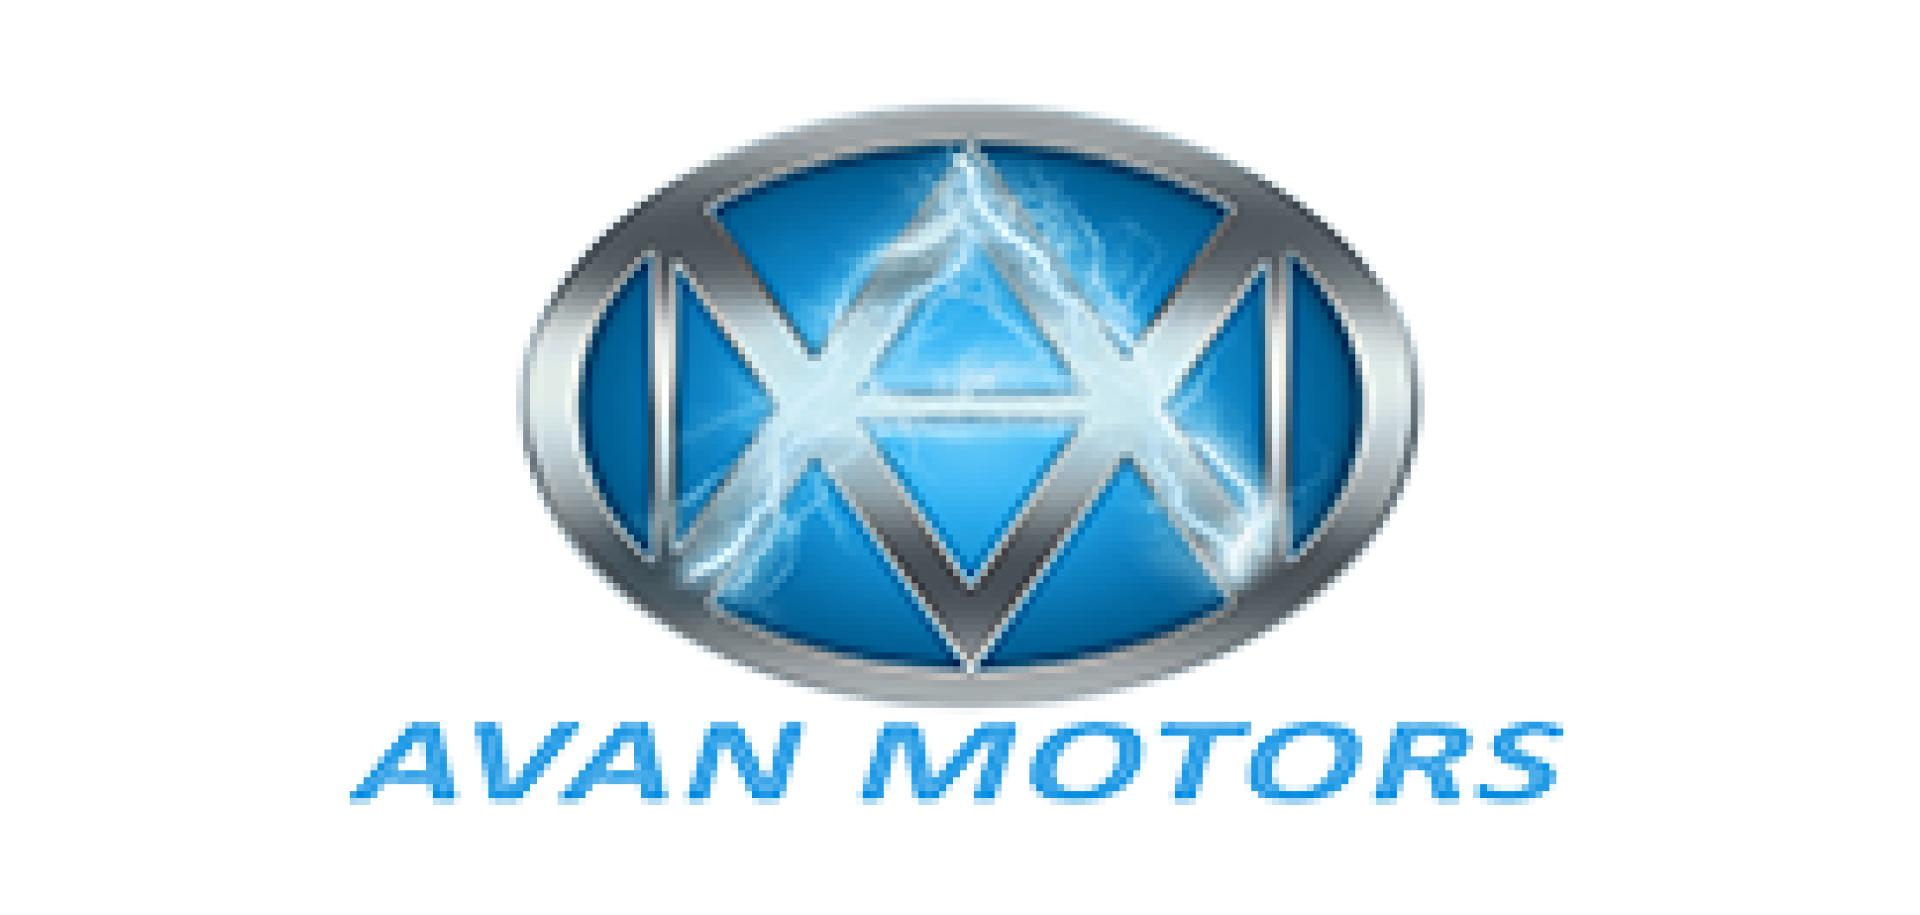 Avan Motors